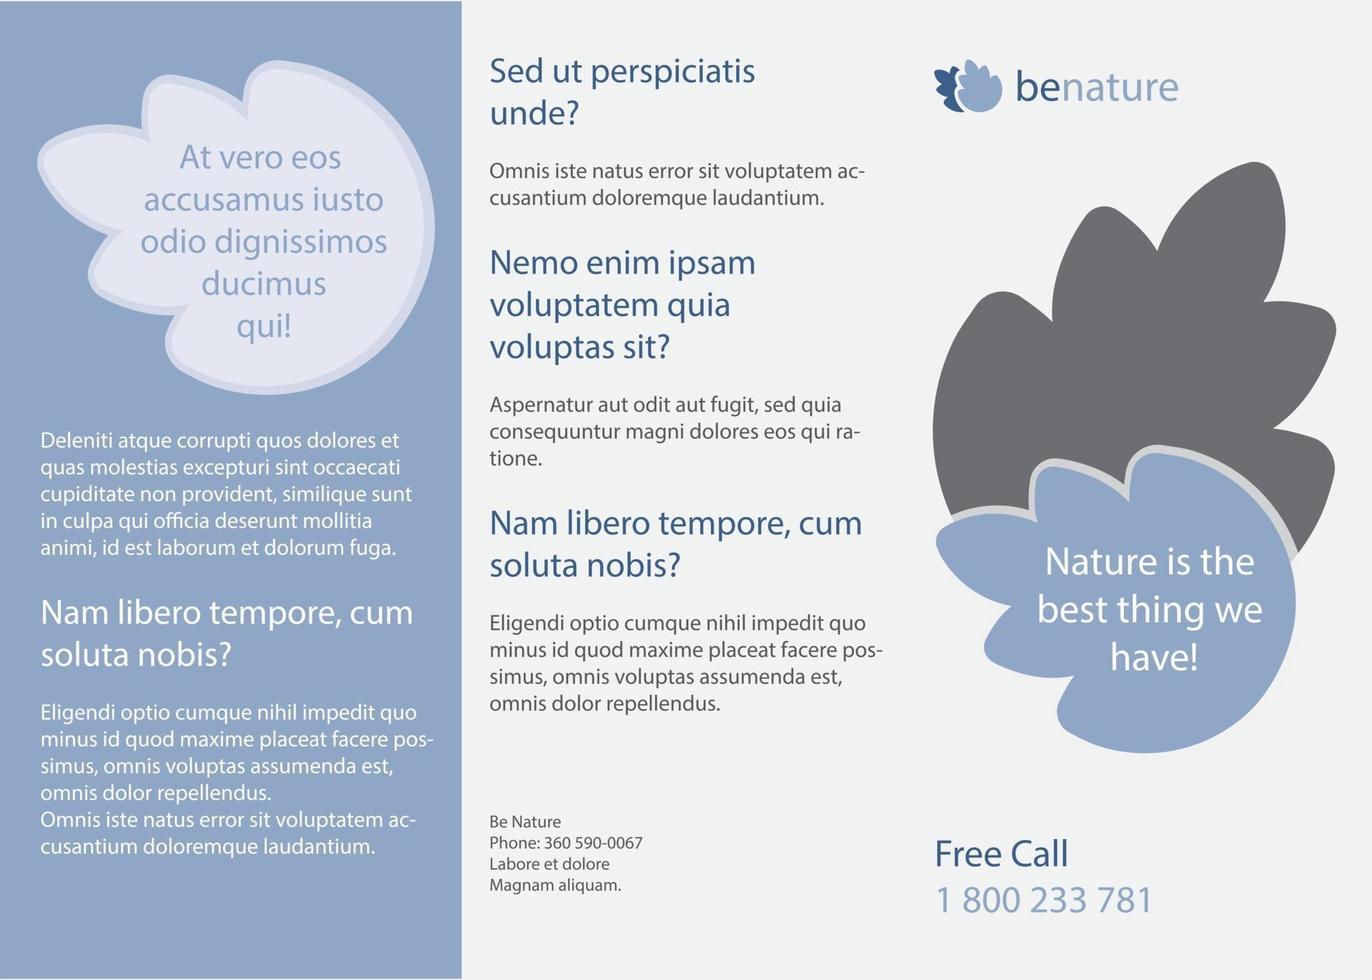 Brochure template vector design